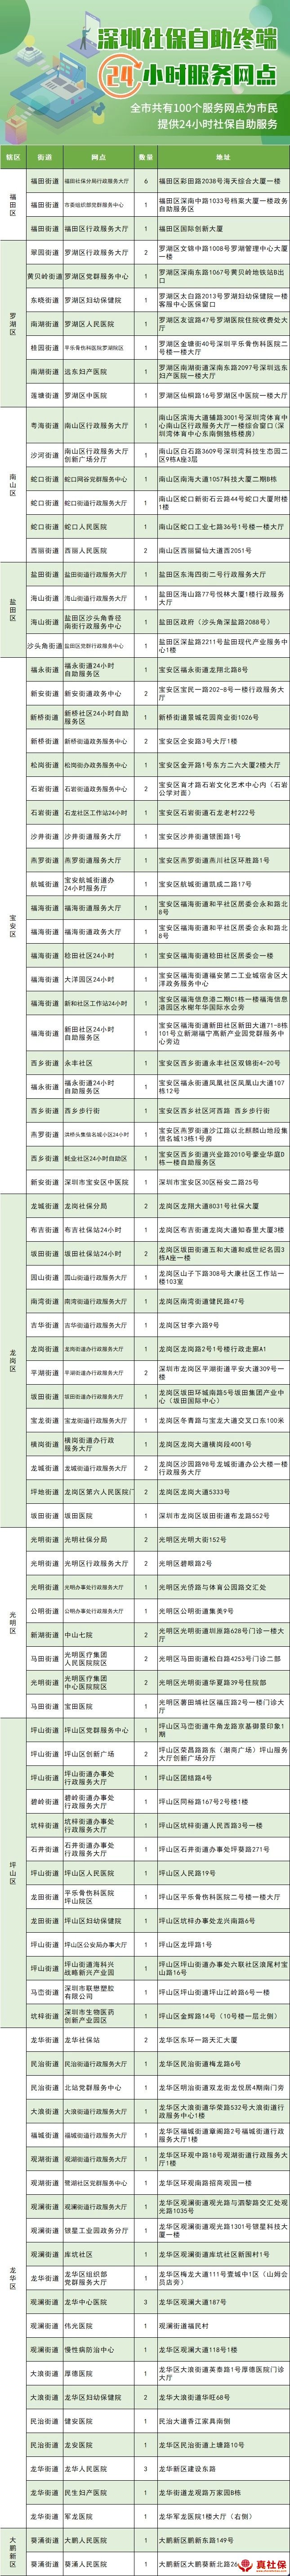 深圳社保自助终端覆盖741个公共服务网点